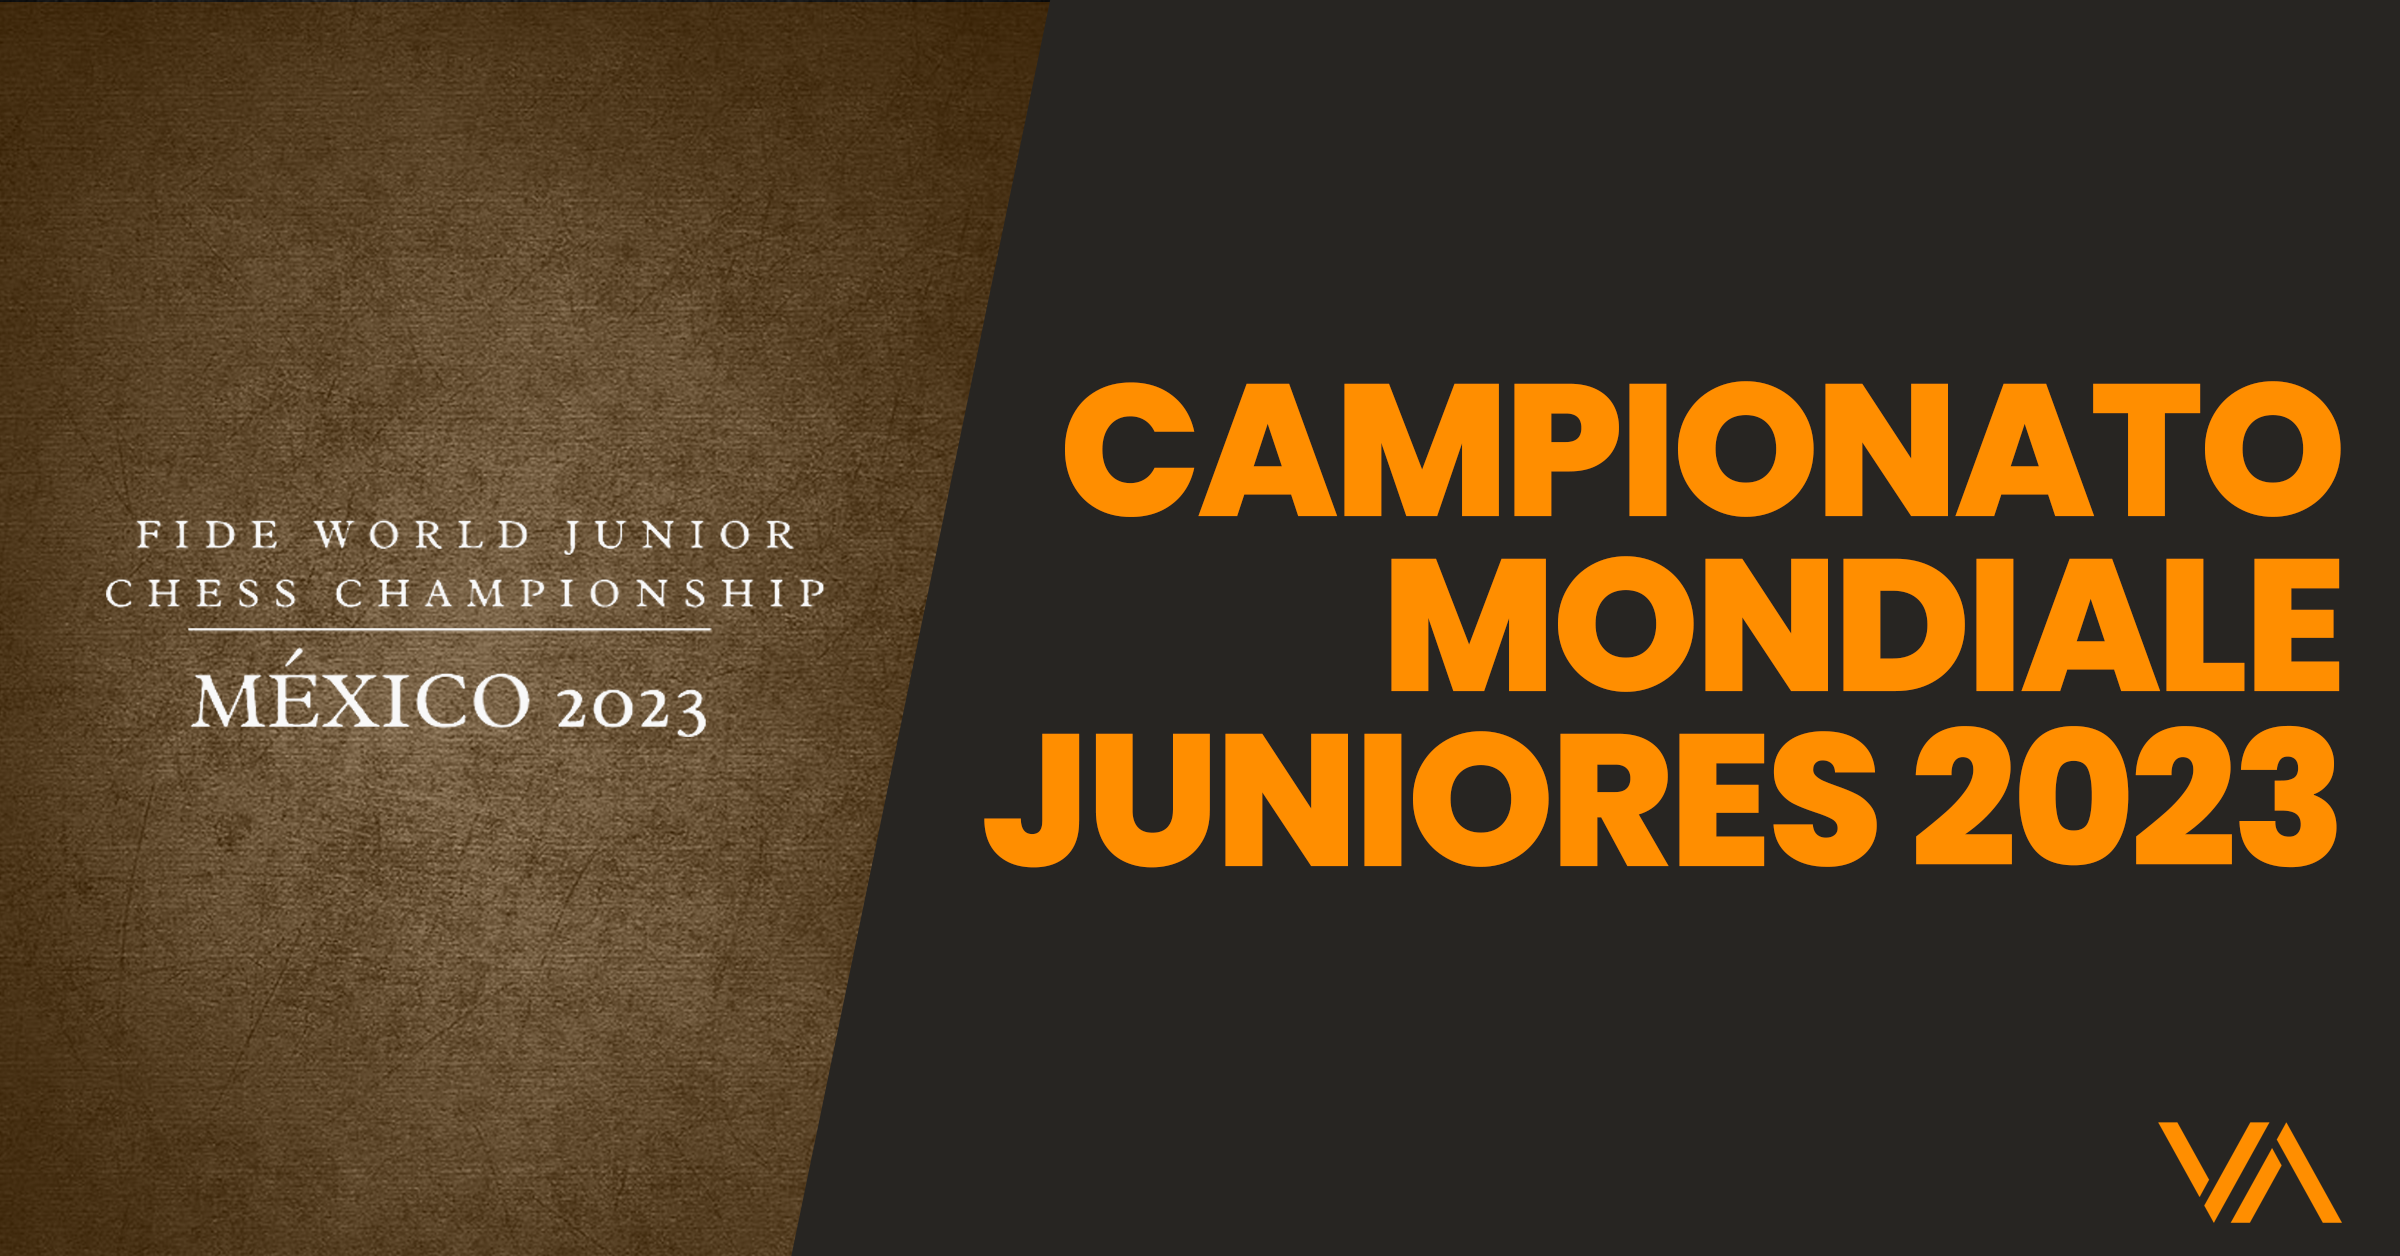 Campionato Mondiale Juniores 2023